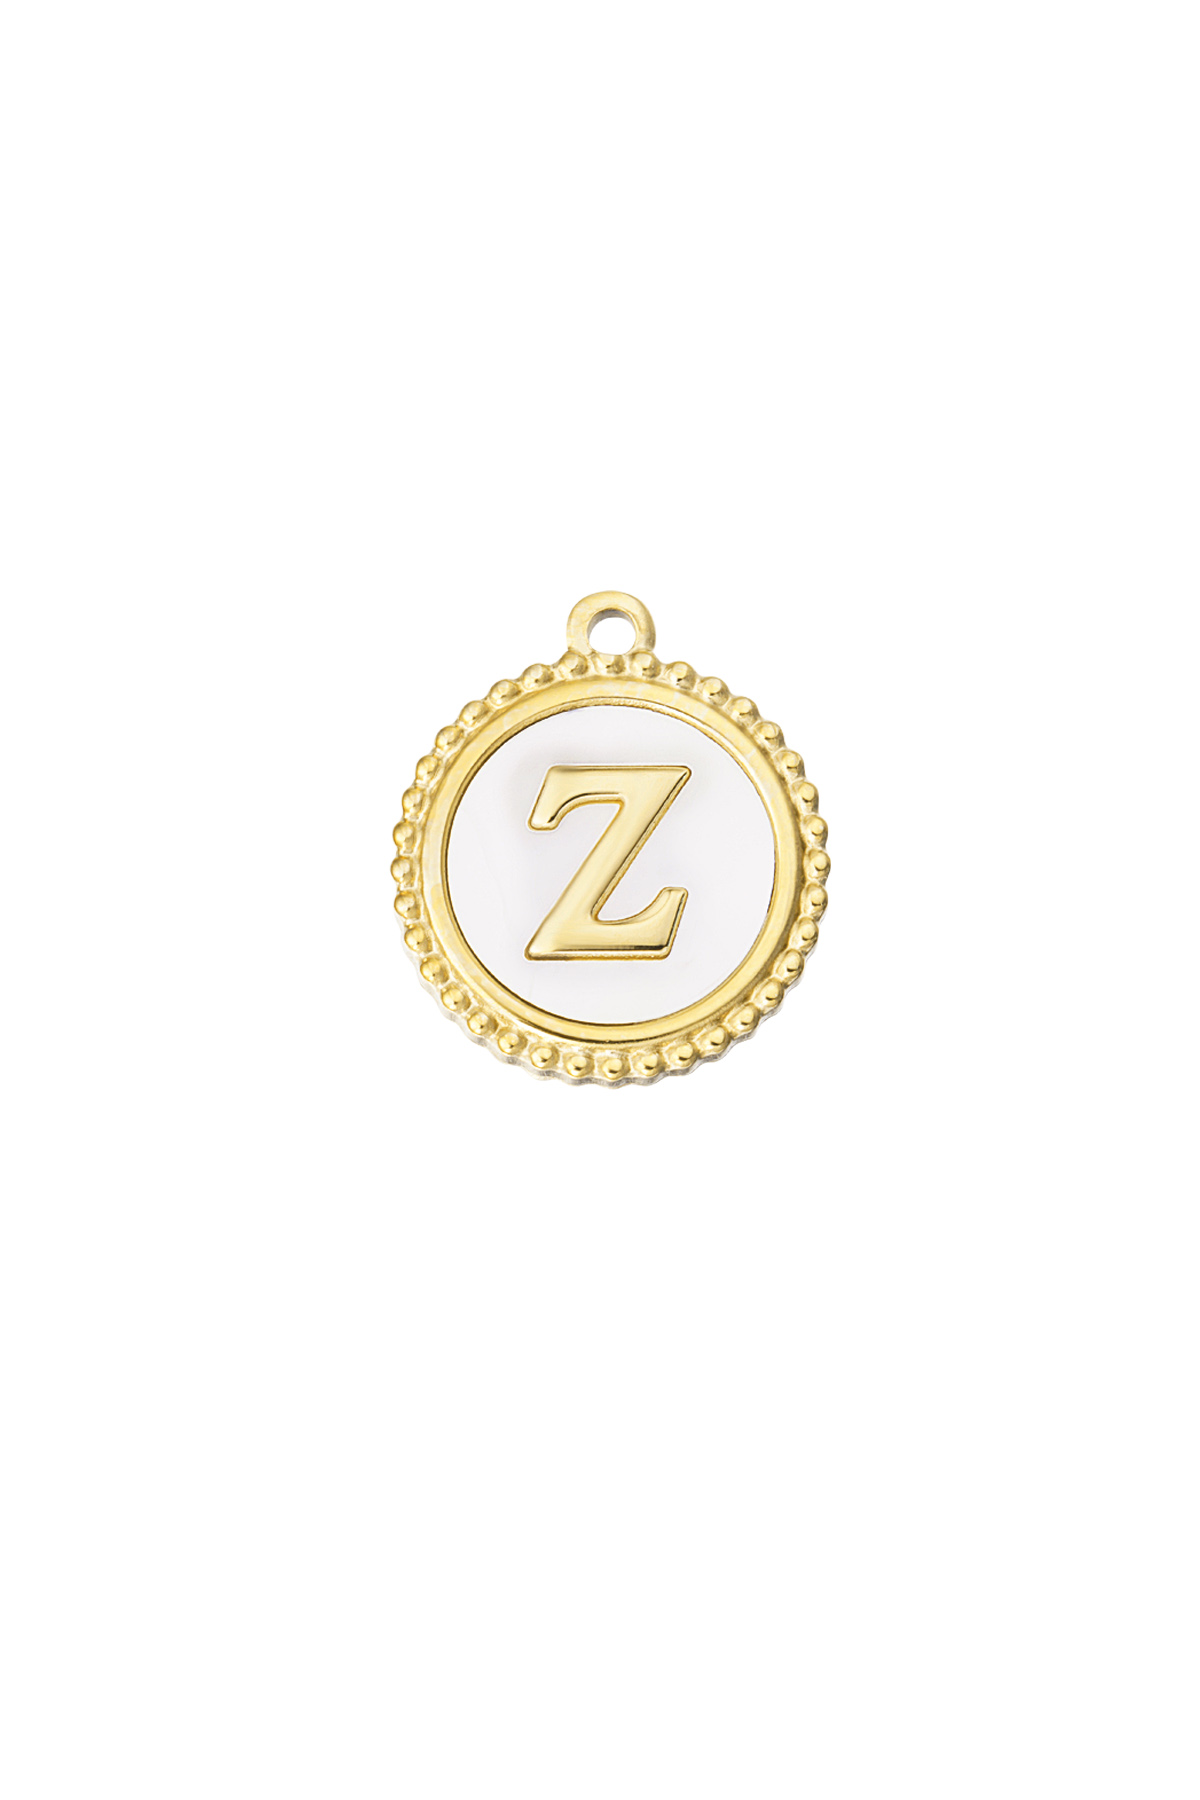 Gold / Charm anmutiges Z - Gold/Weiß Bild24